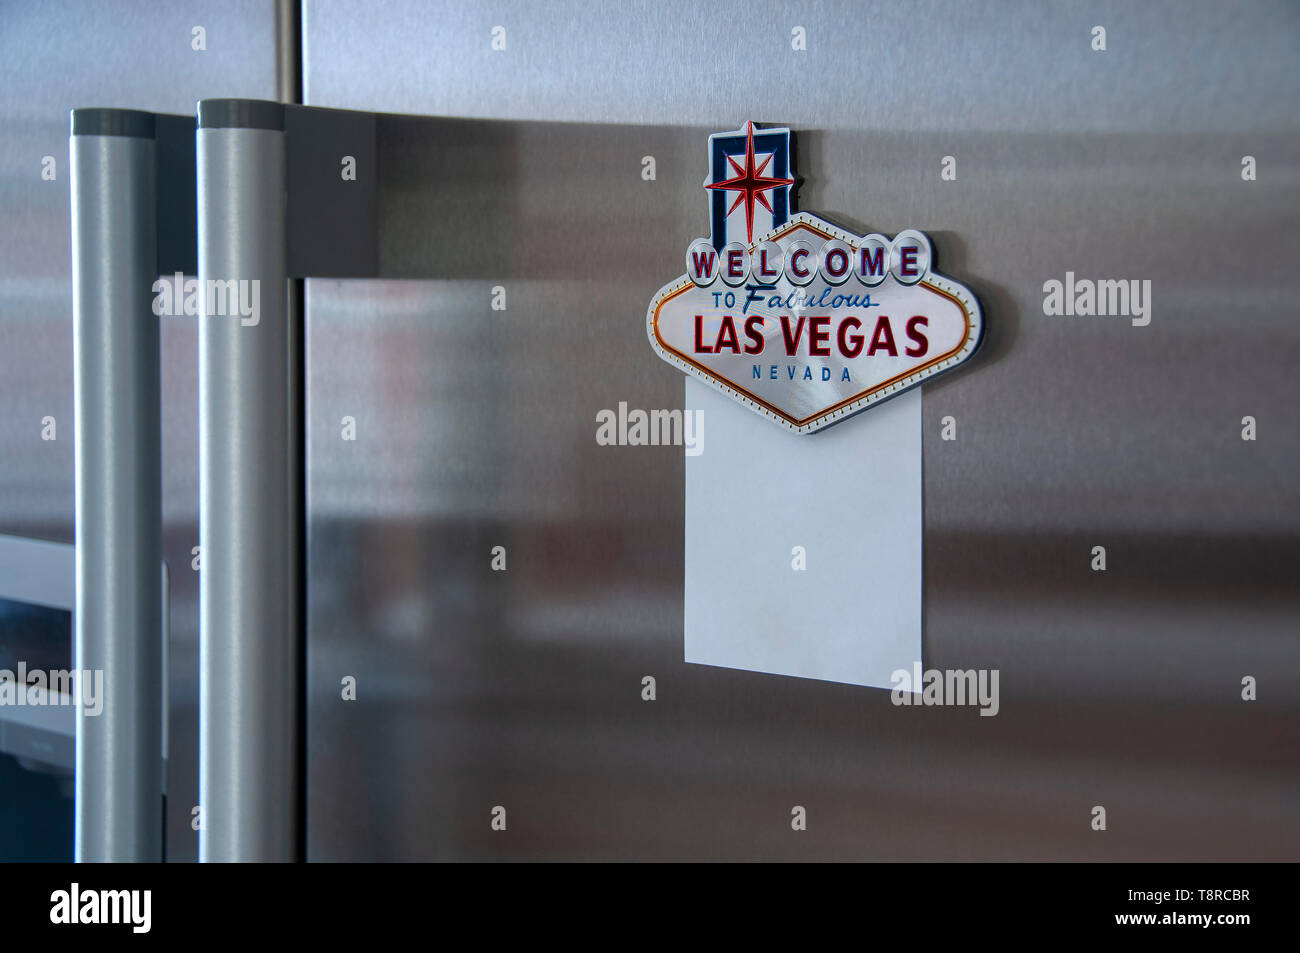 Las Vegas avec aimant pour réfrigérateur vide notelet fixé sur un acier inoxydable réfrigérateur moderne Banque D'Images